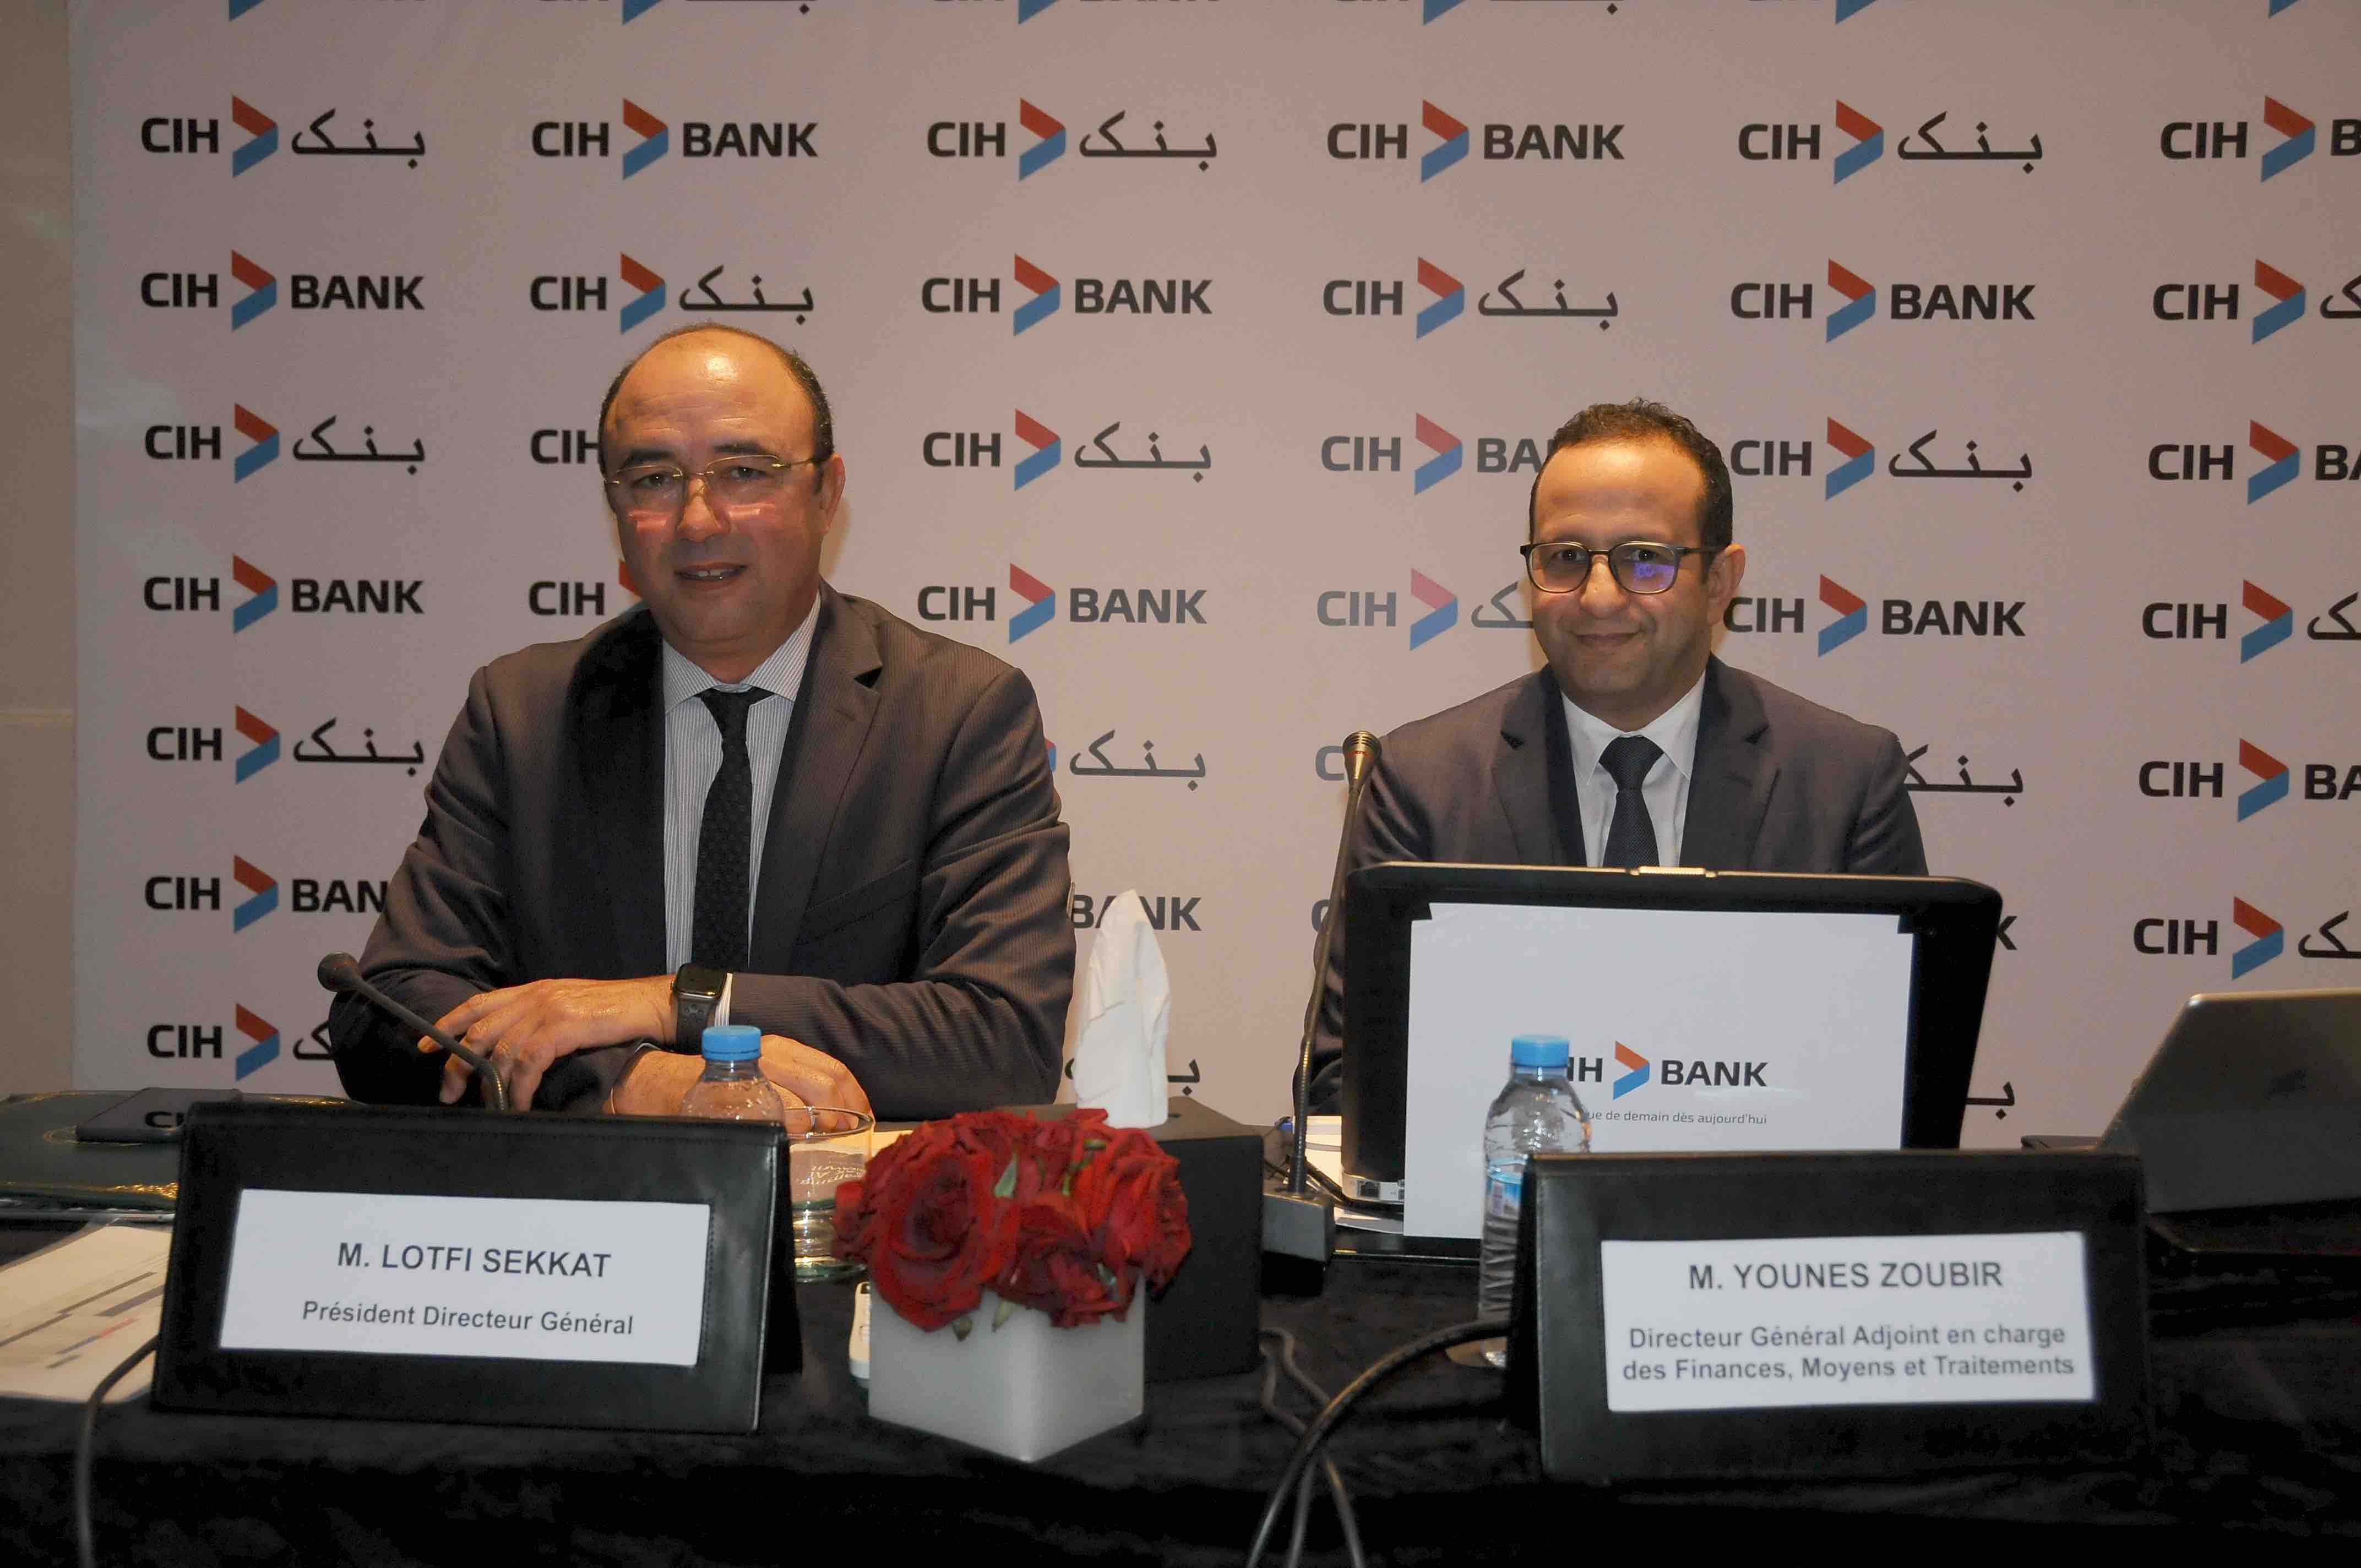 Le digital, un relais gagnant pour CIH Bank